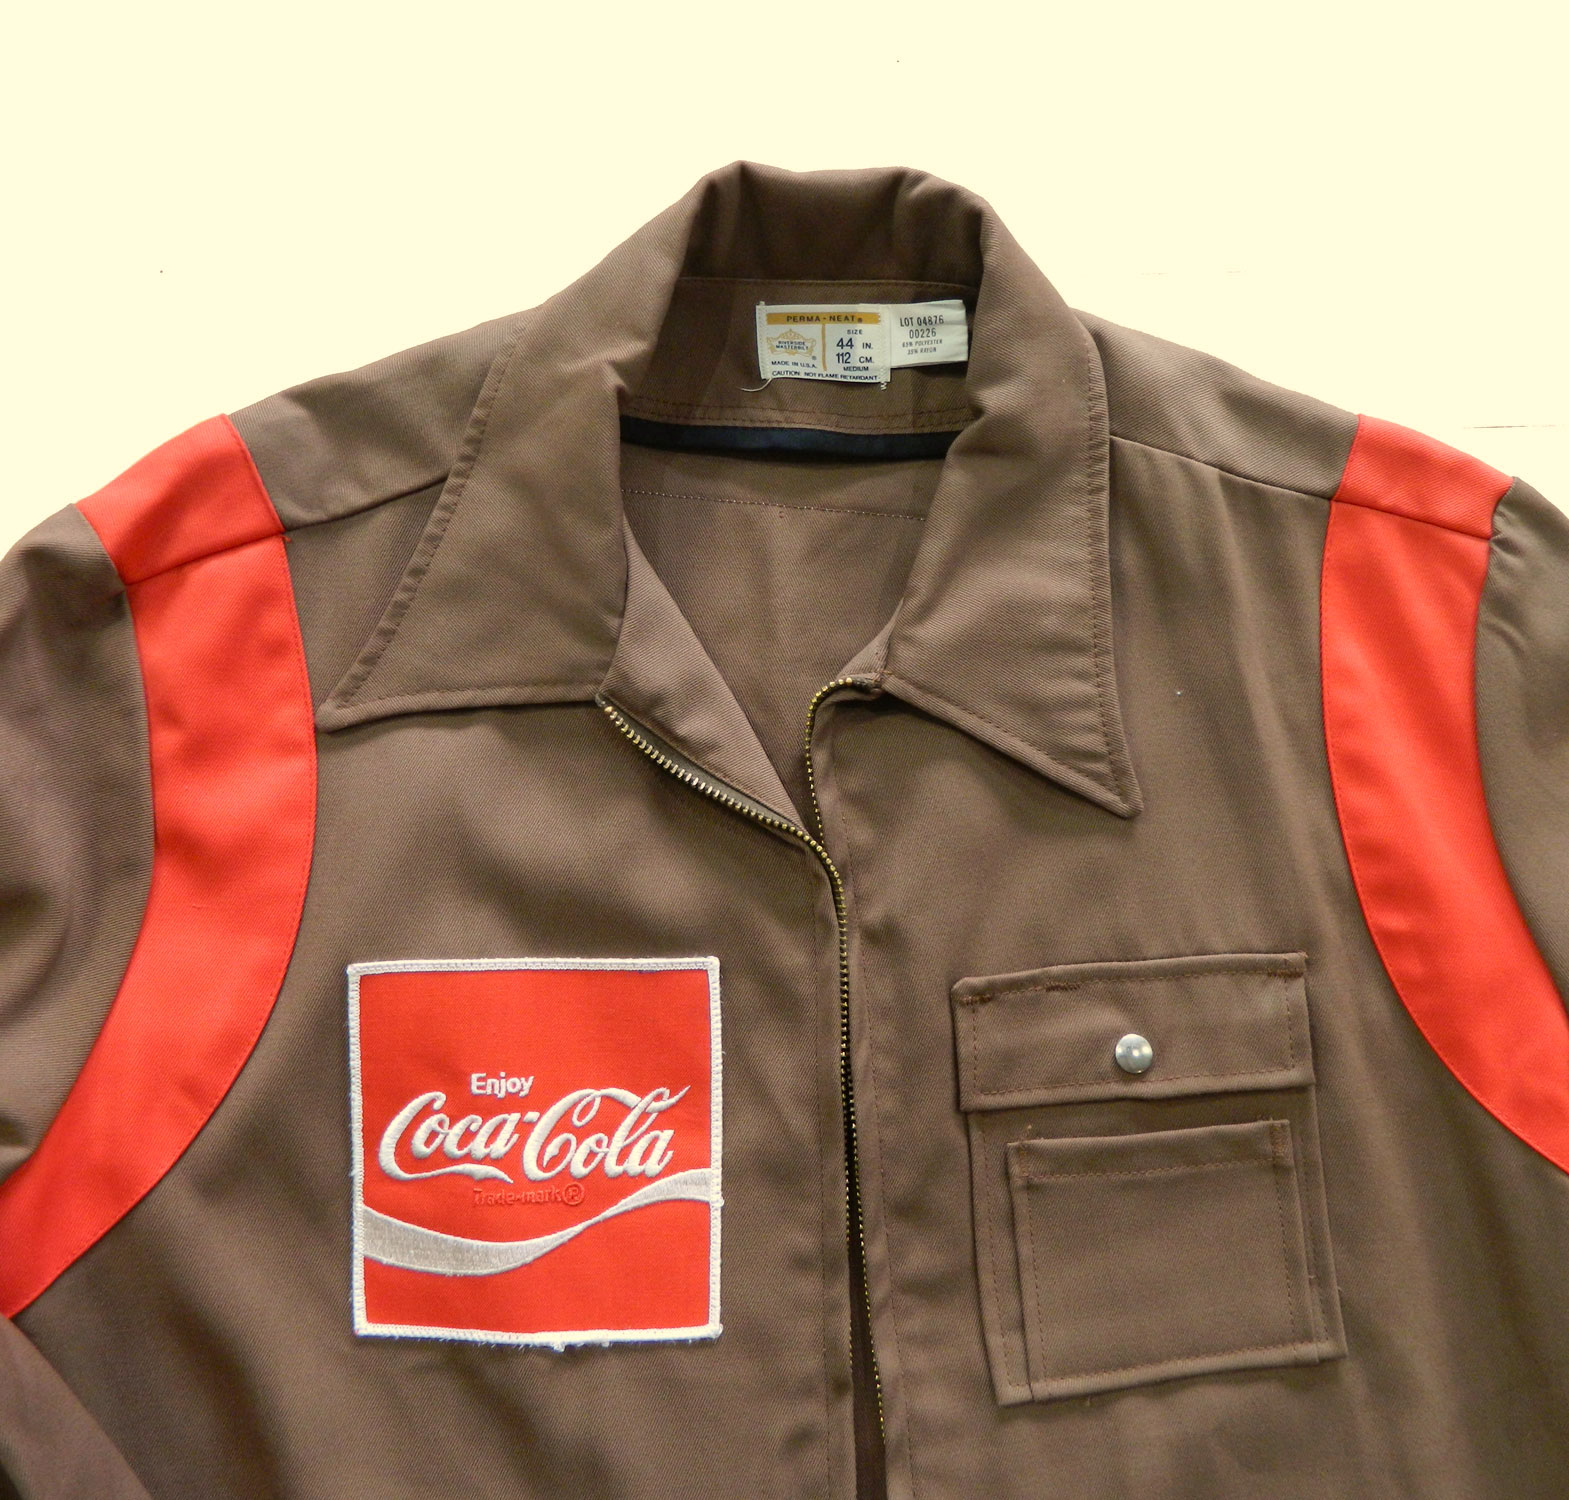 Coca Cola jacket